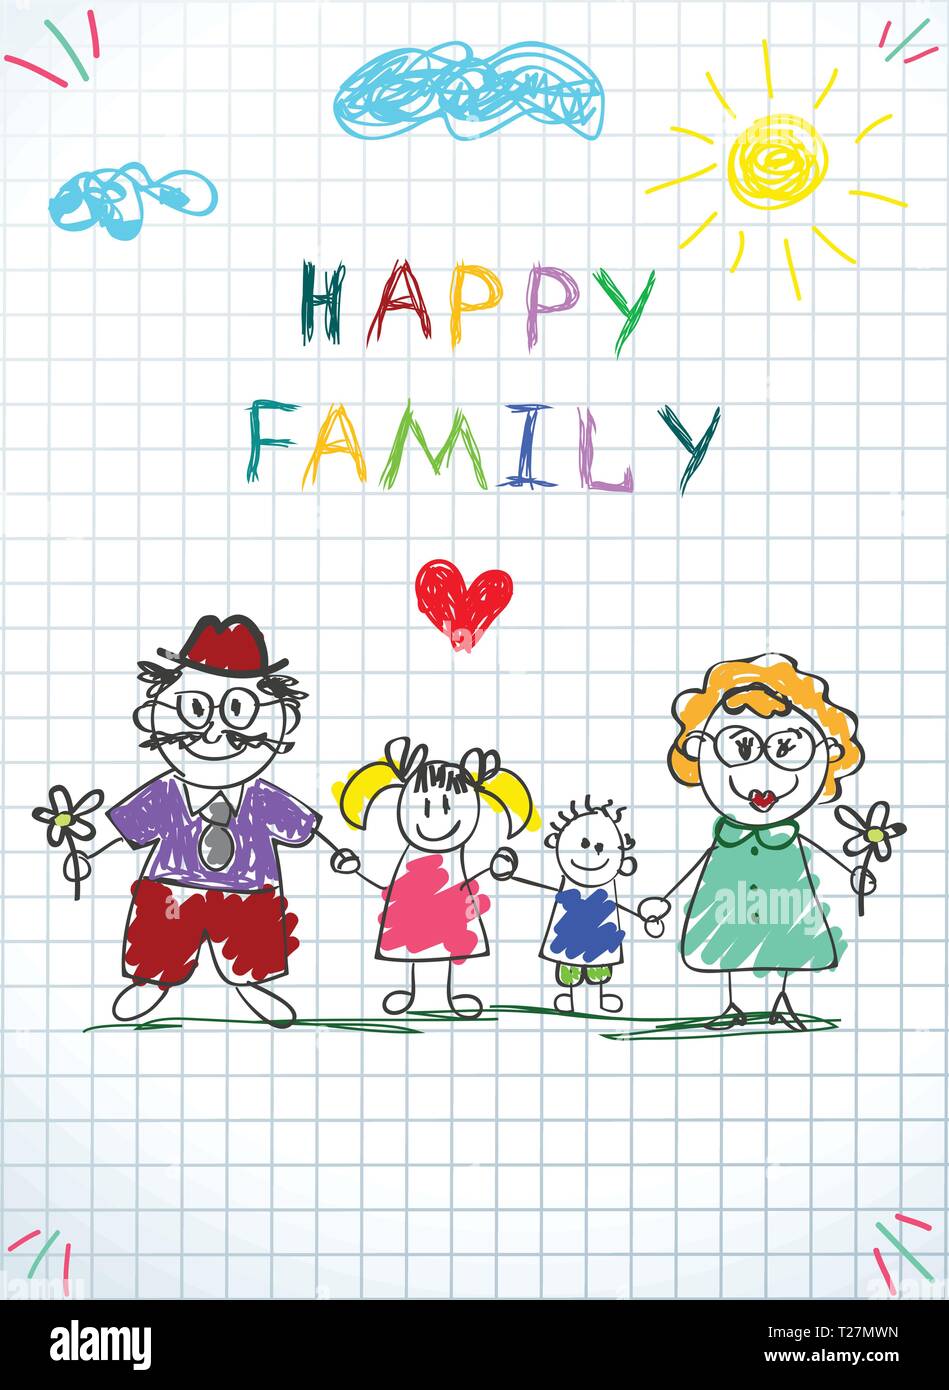 Happy Family Kids Bild des kleinen Jungen und Mädchen halten sich an den Händen der erwachsenen Menschen, Mann und Frau unter Wolken und Sonne auf karierten Blatt Hintergrund. Doodl Stock Vektor